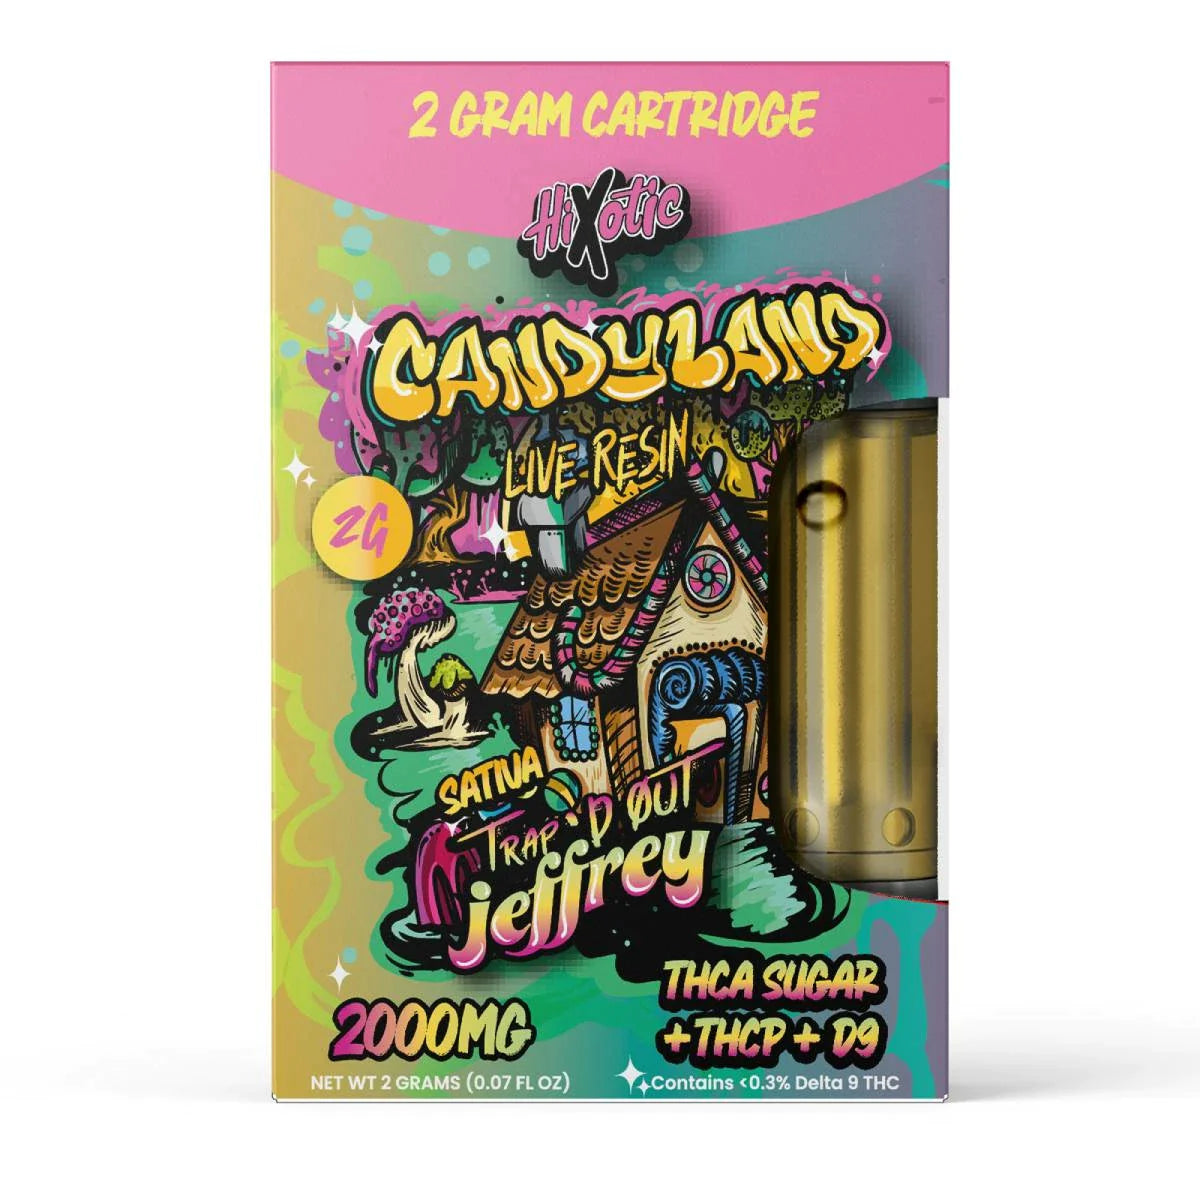 HiXotic Trap’d Out Jeffrey Cartridges 2g Best Price